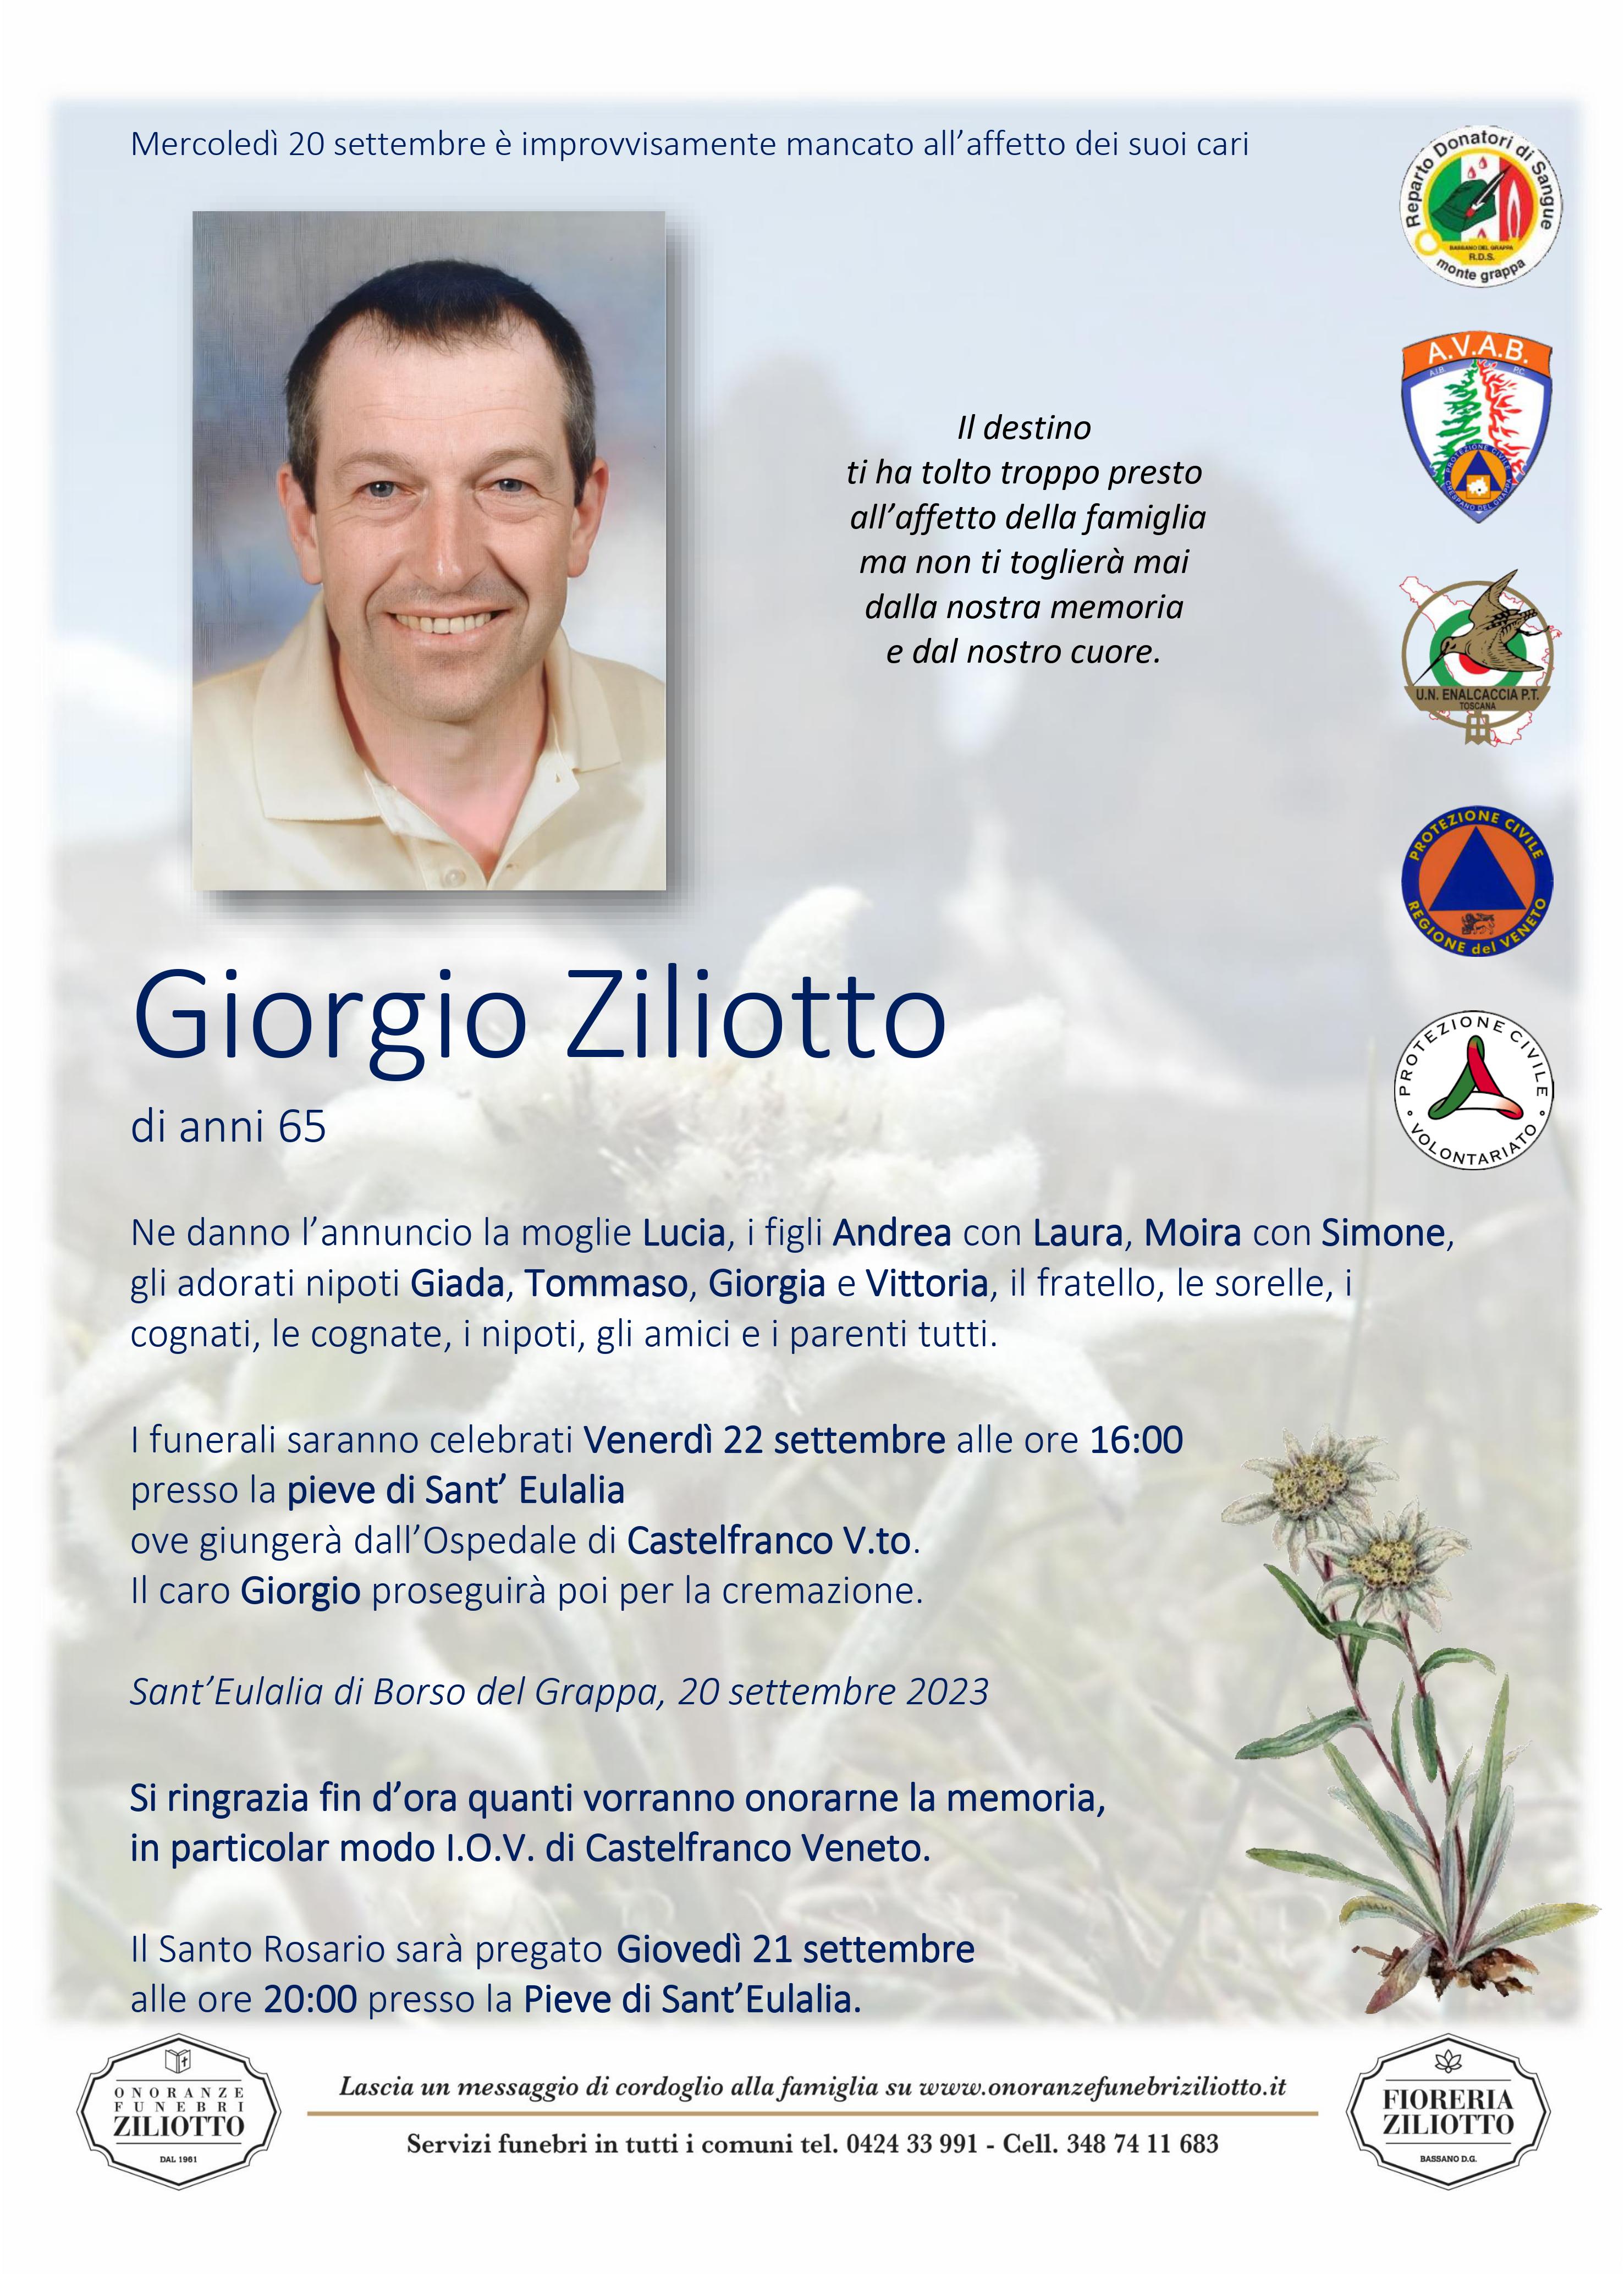 Giorgio Ziliotto - 65 anni - Sant'Eulalia di Borso del Gr